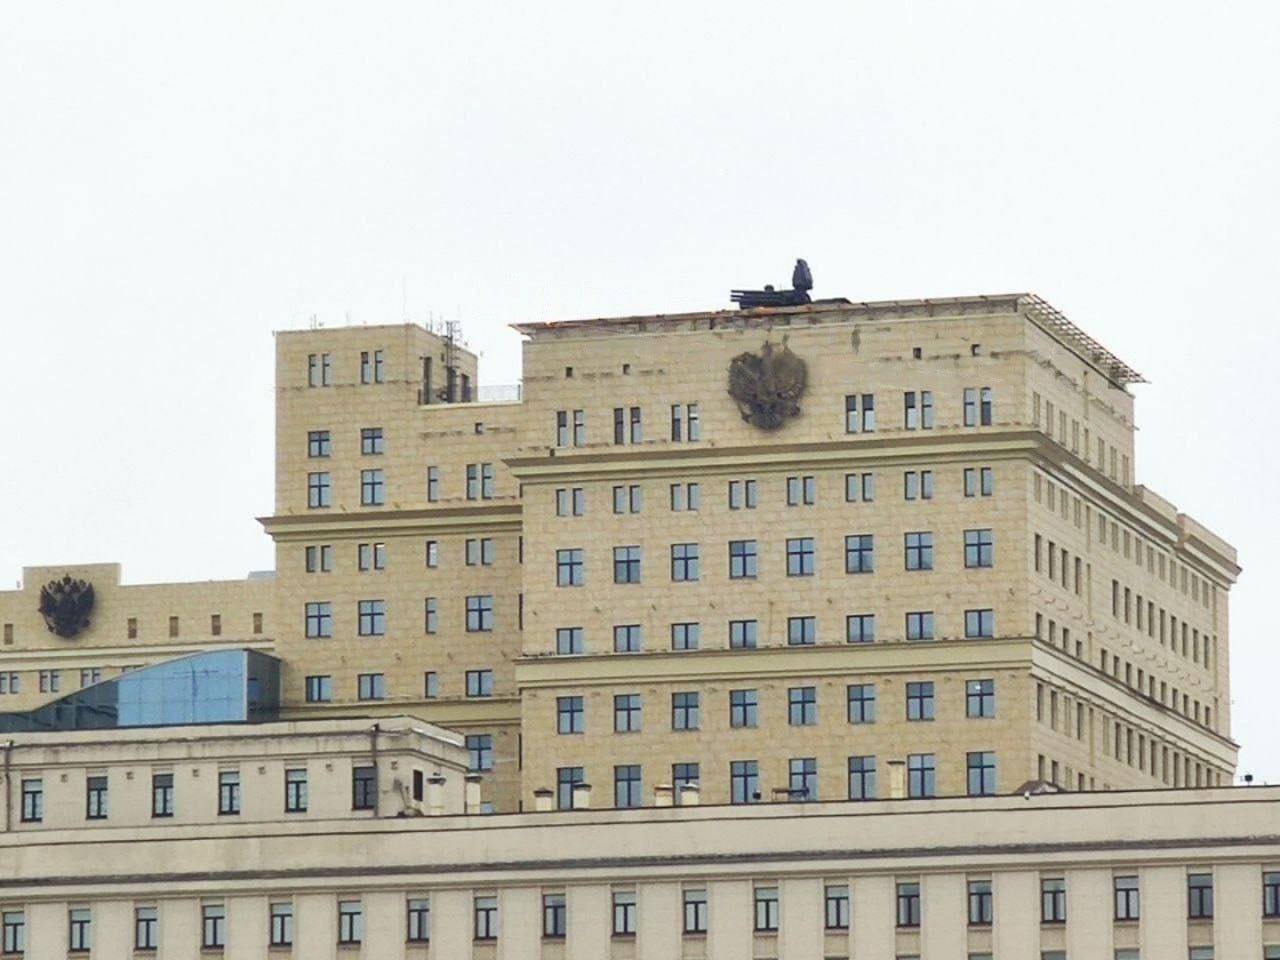 Здание МО РФ. На крыше видно Панцирь